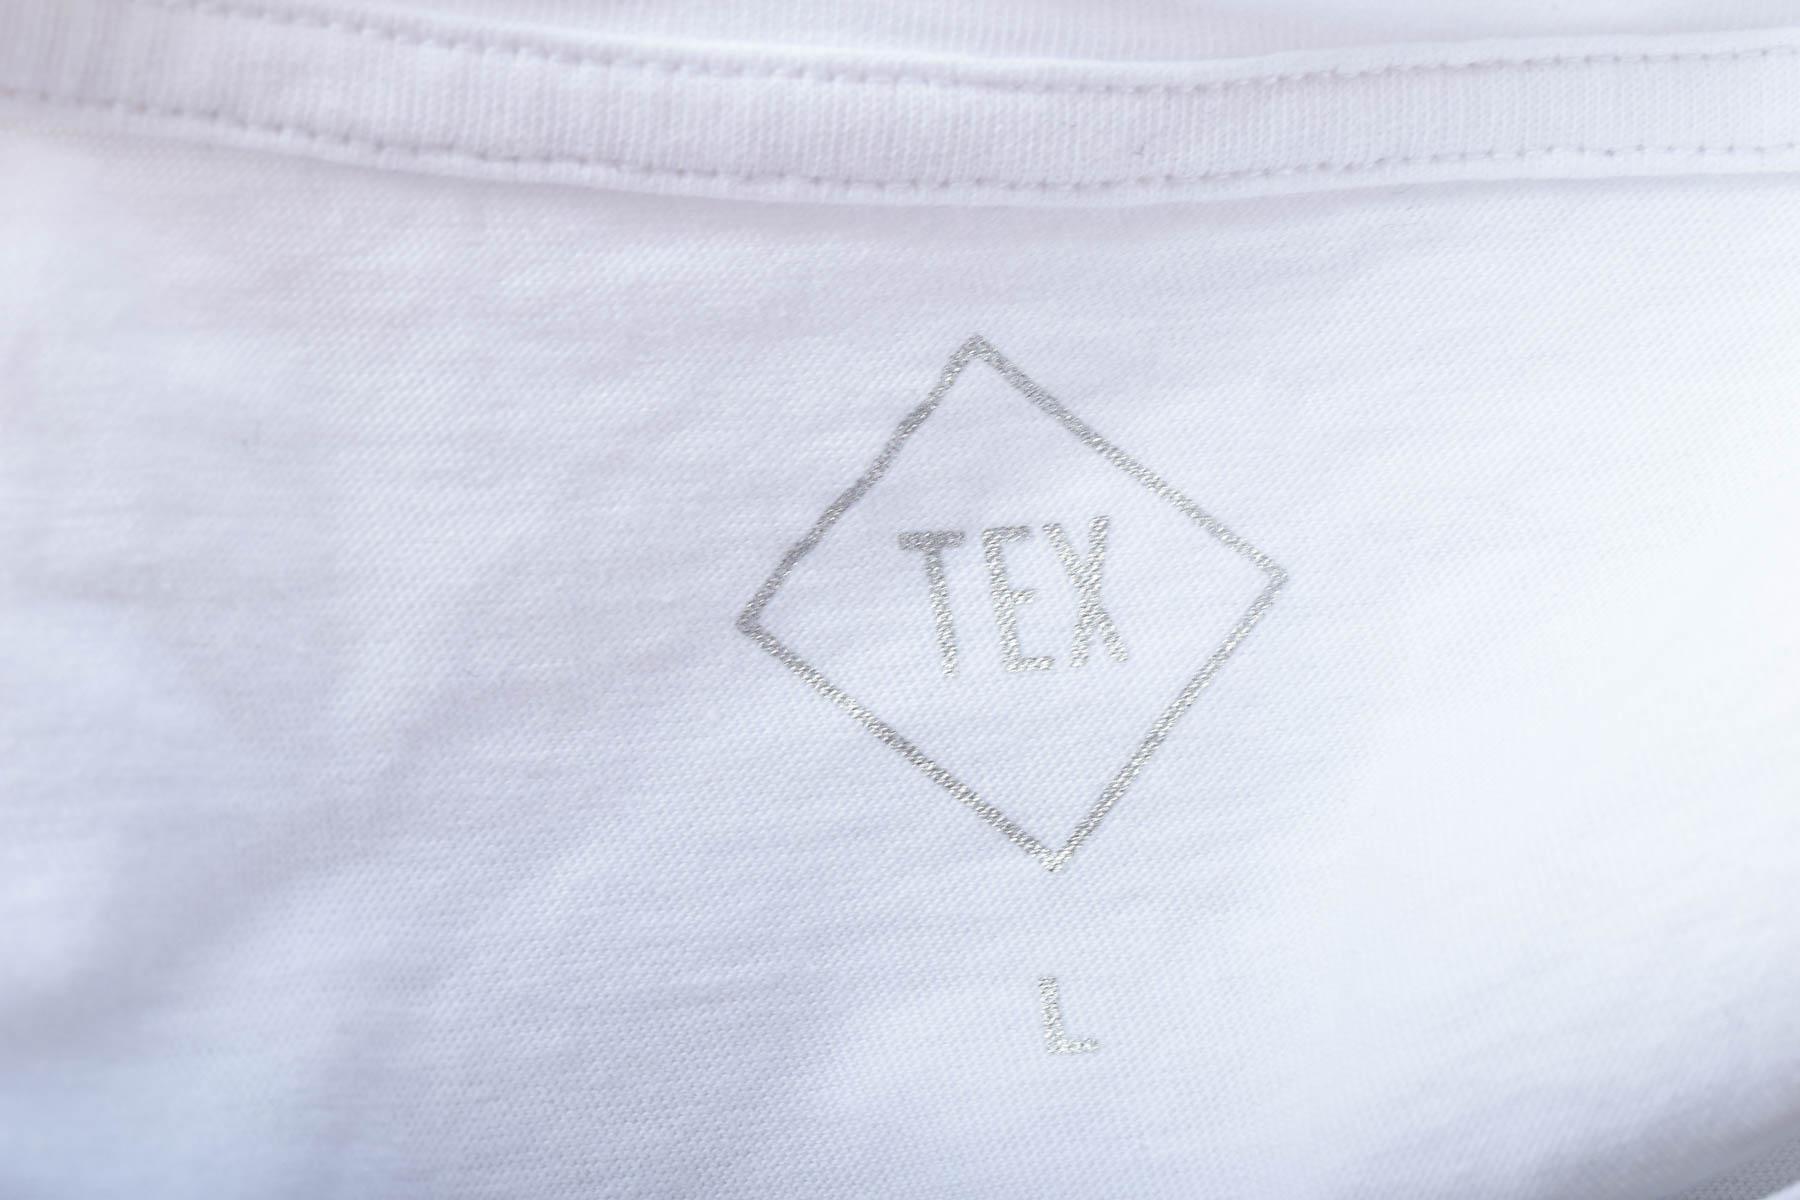 Γυναικεία μπλούζα - TeX - 2